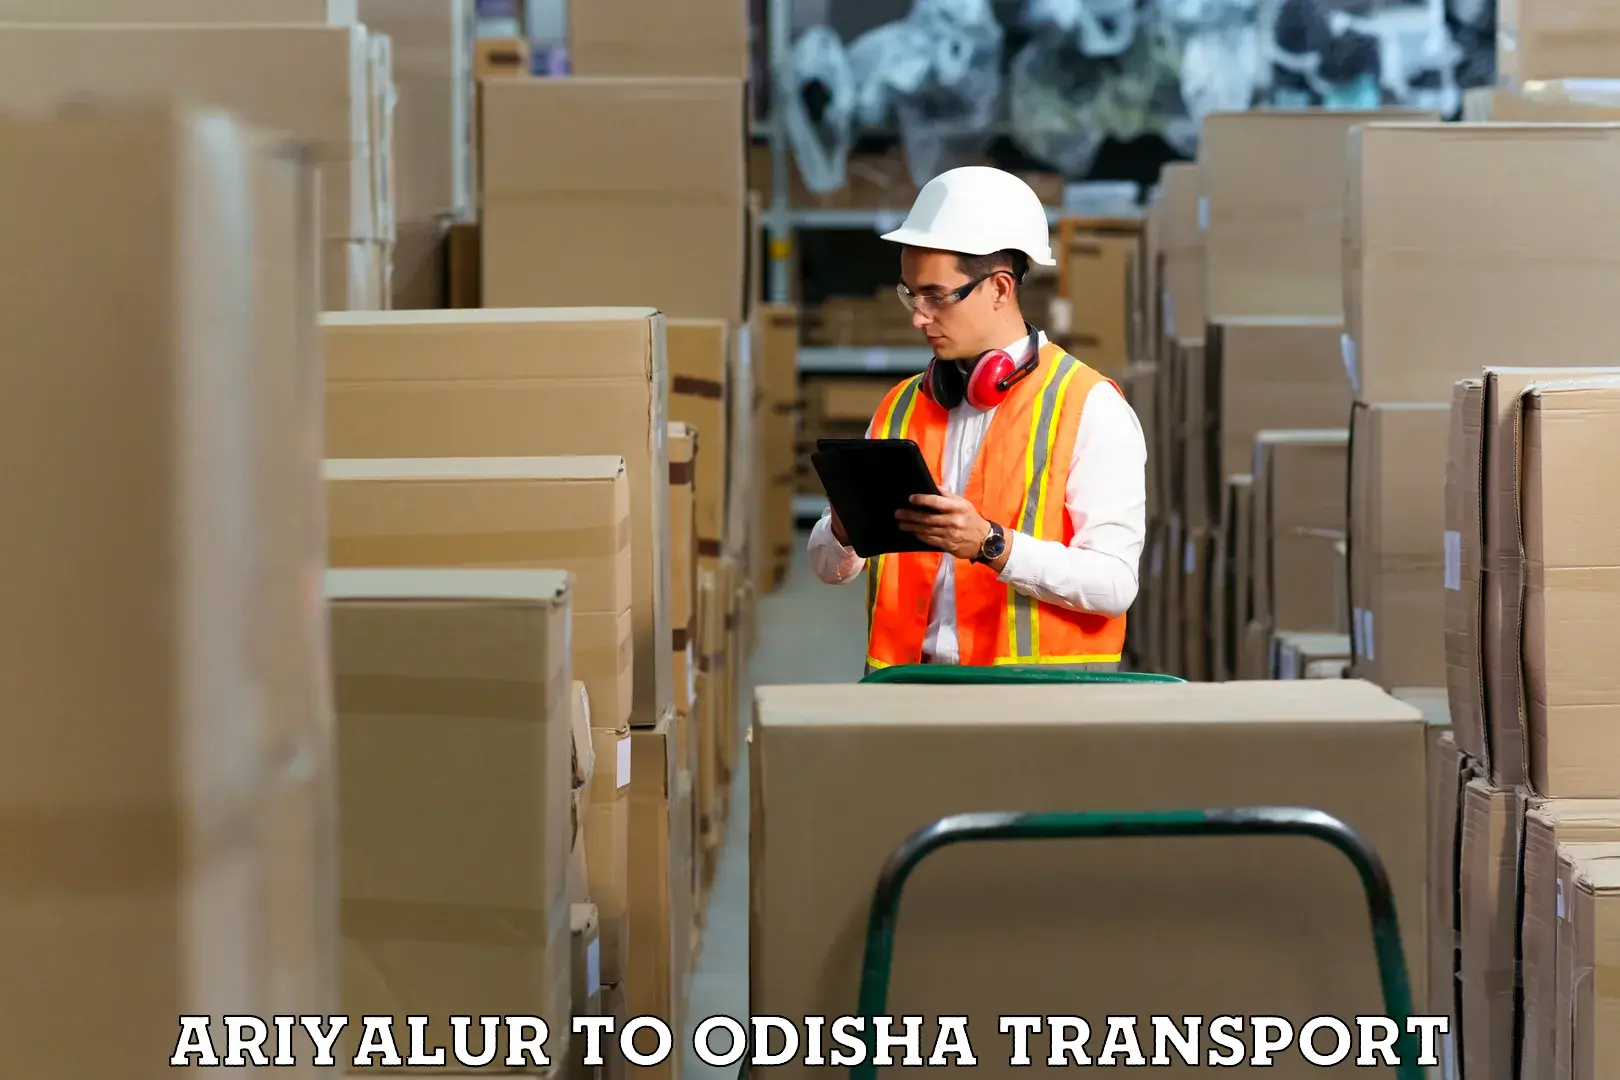 Furniture transport service Ariyalur to Khordha